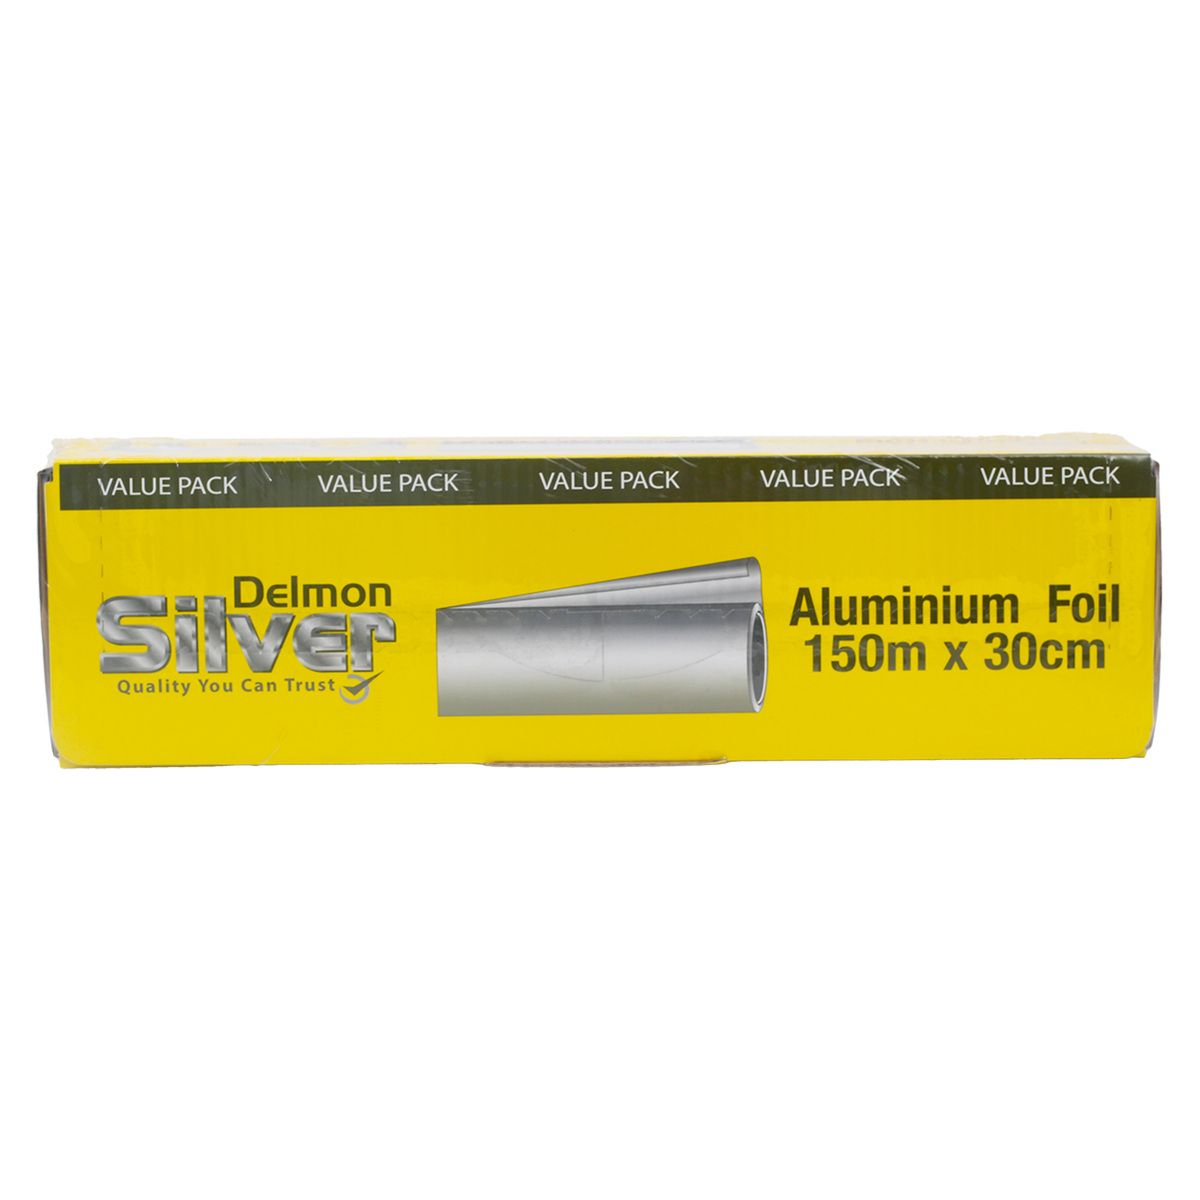 Delmon Aluminium Foil Value Pack 150m x 30cm 1 pc